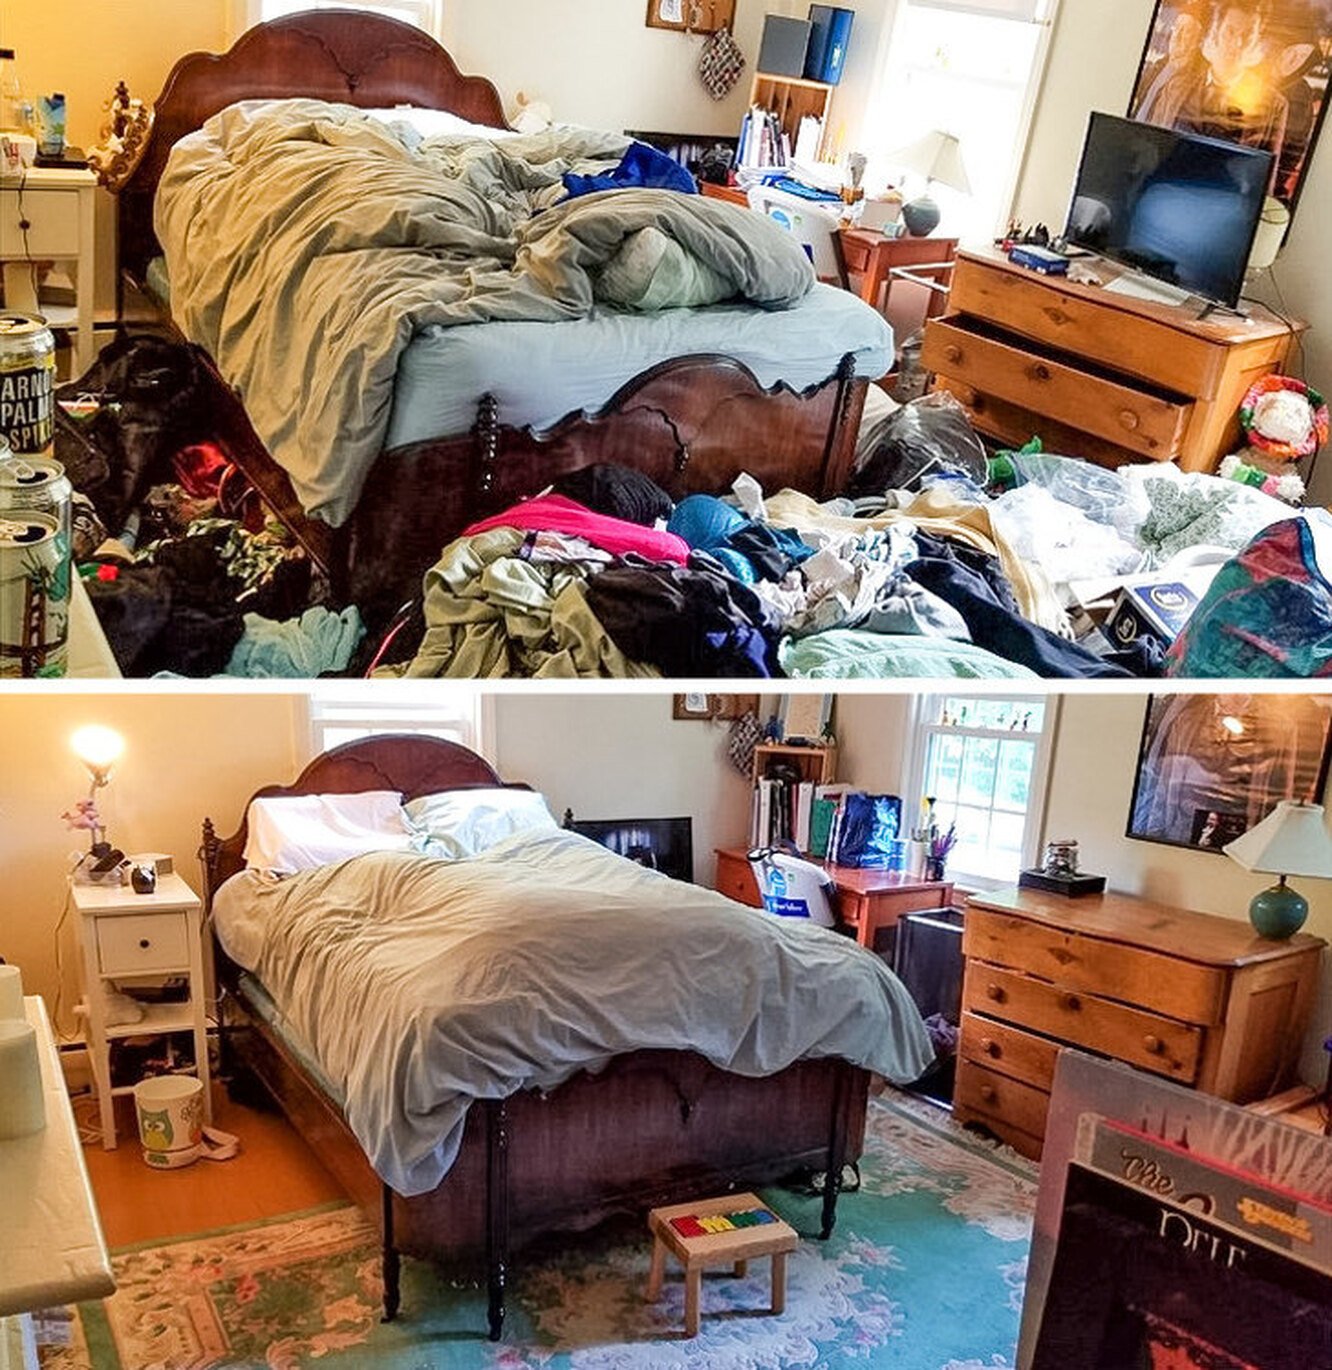 Навели беспорядок. Беспорядок в квартире. Беспорядок в квартире до и после. Комната бардак и порядок. Захламленная квартира до и после уборки.